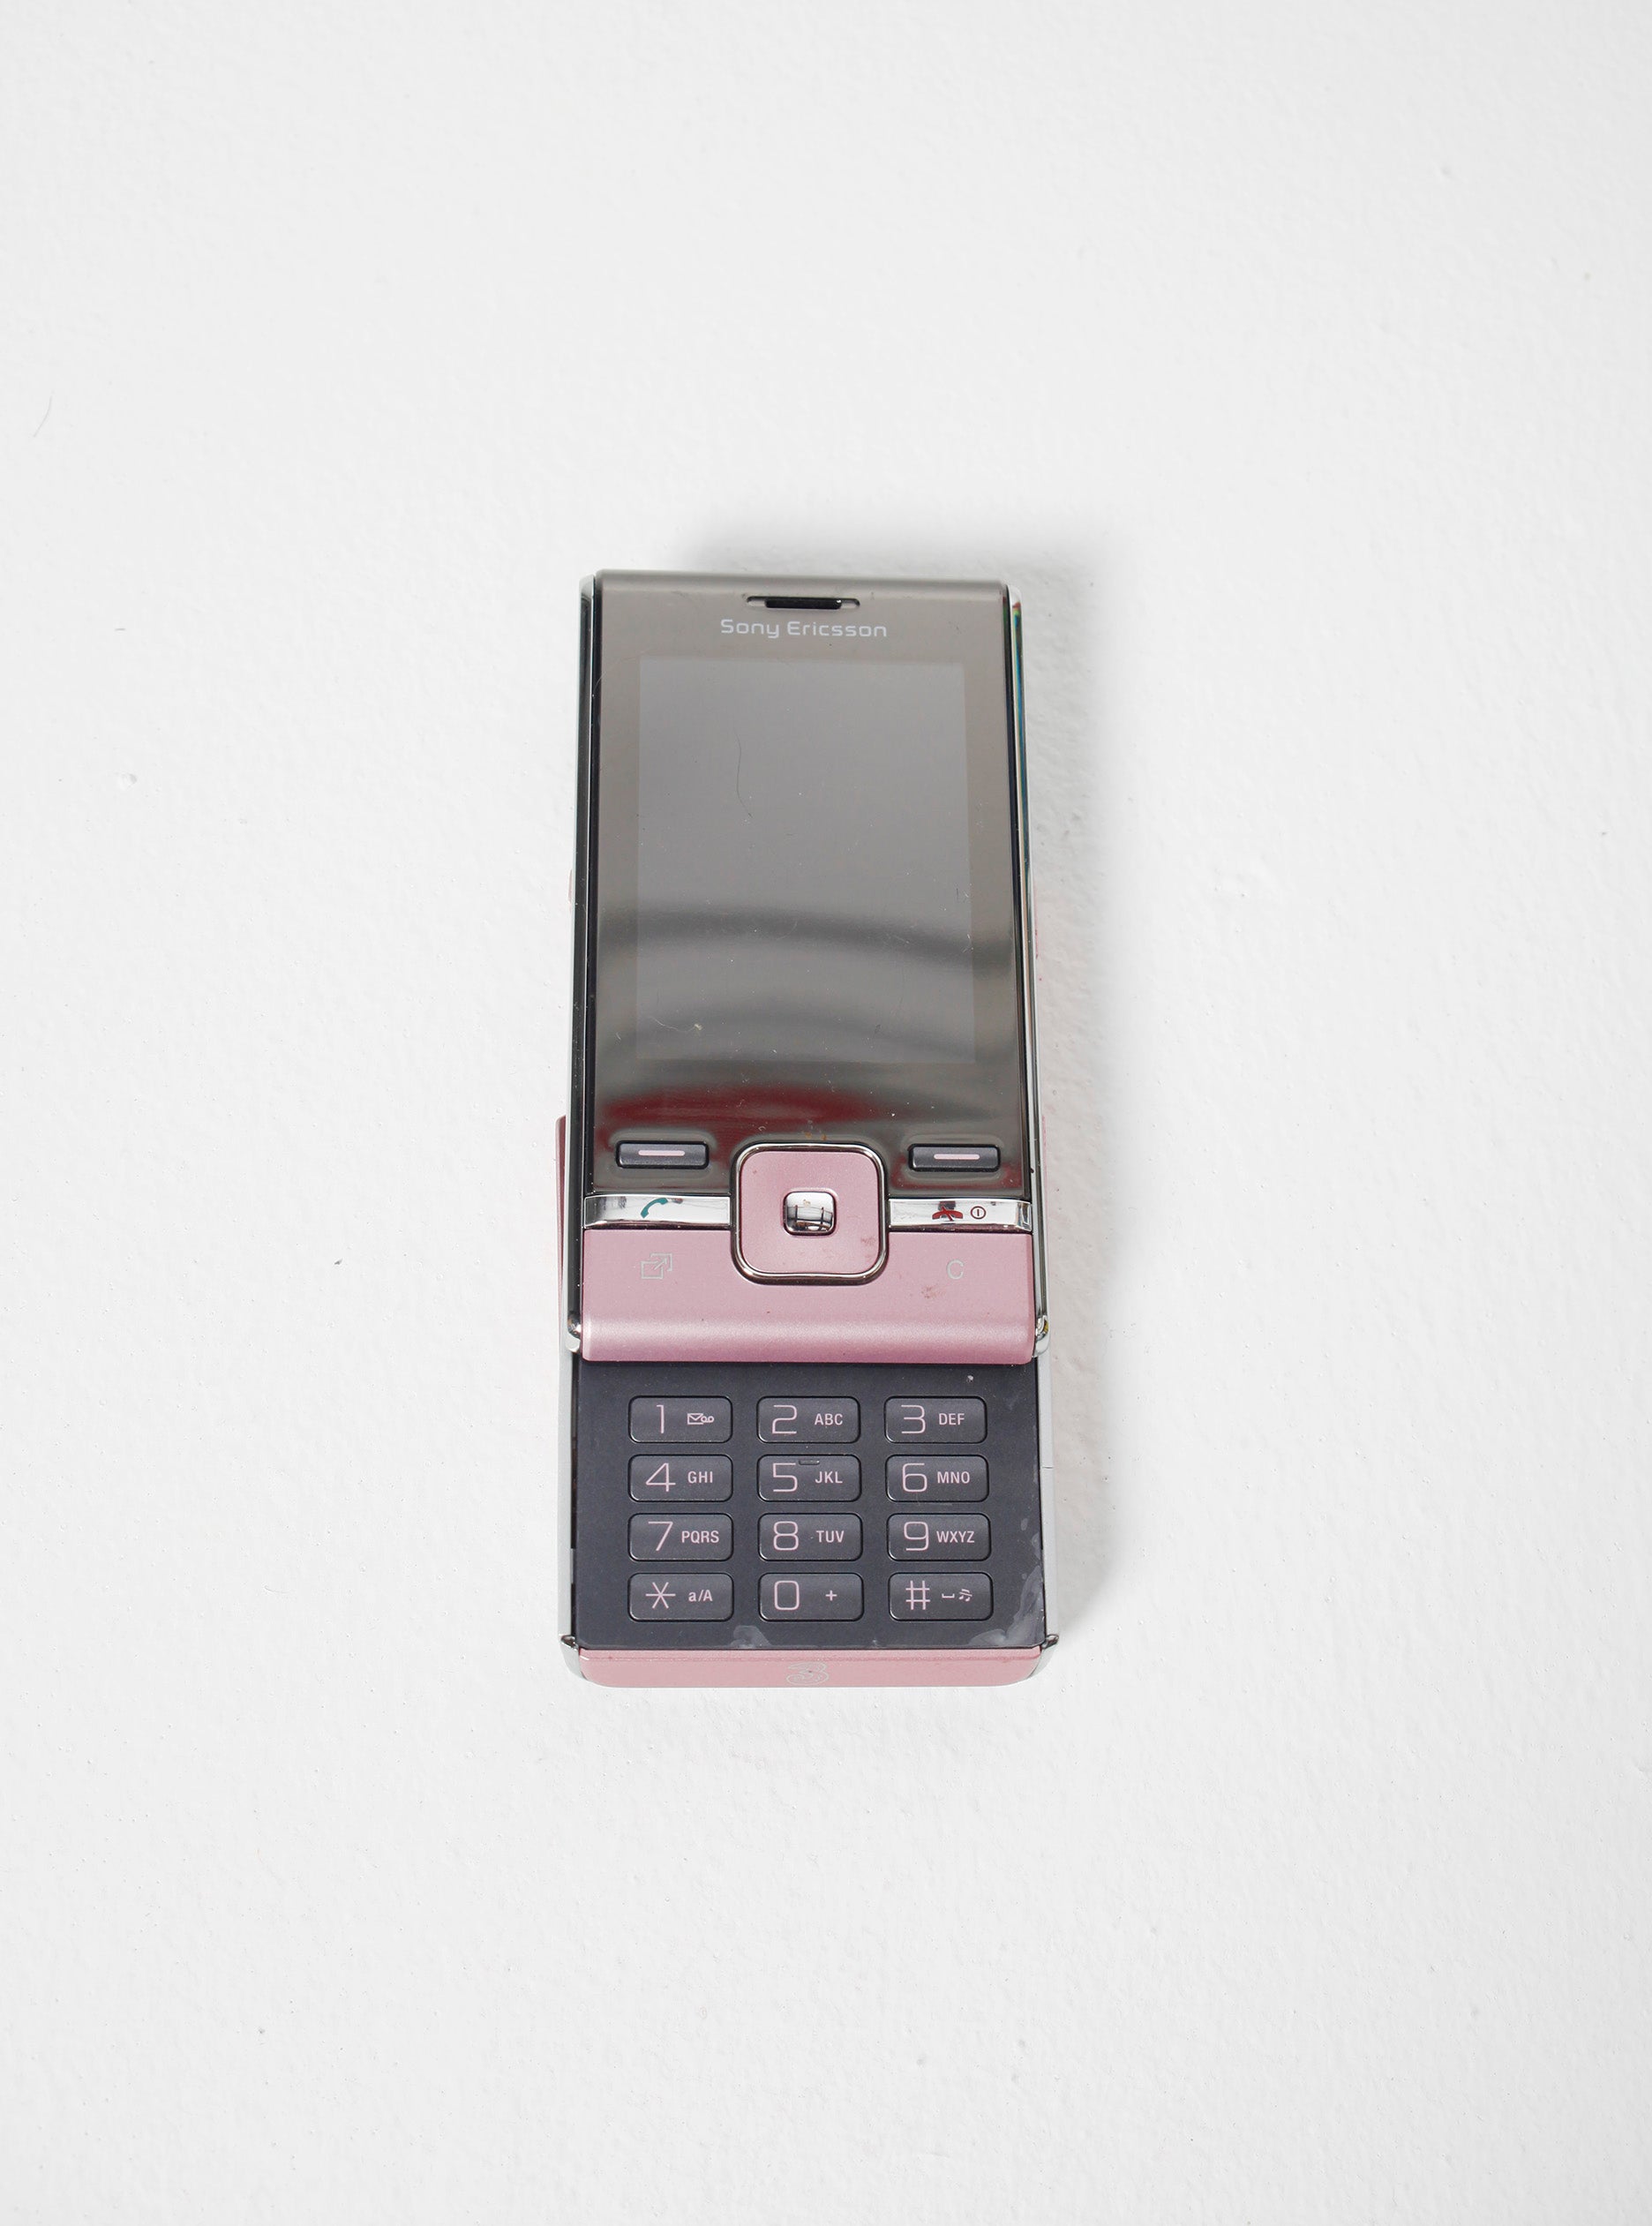 Sony Ericsson T715 Mobile Phone